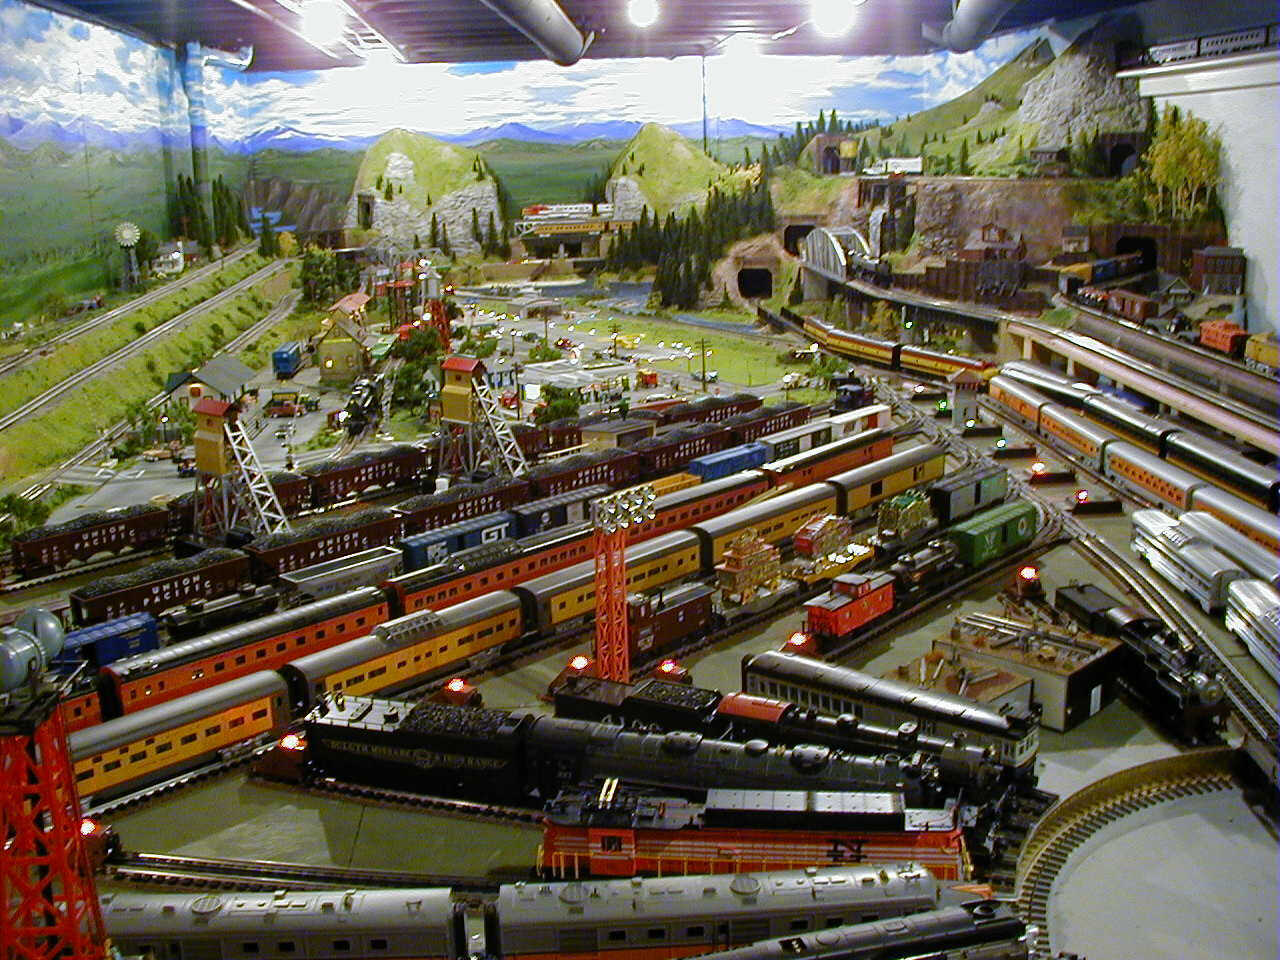  drops model train in germany ho scale model railway layout base kit